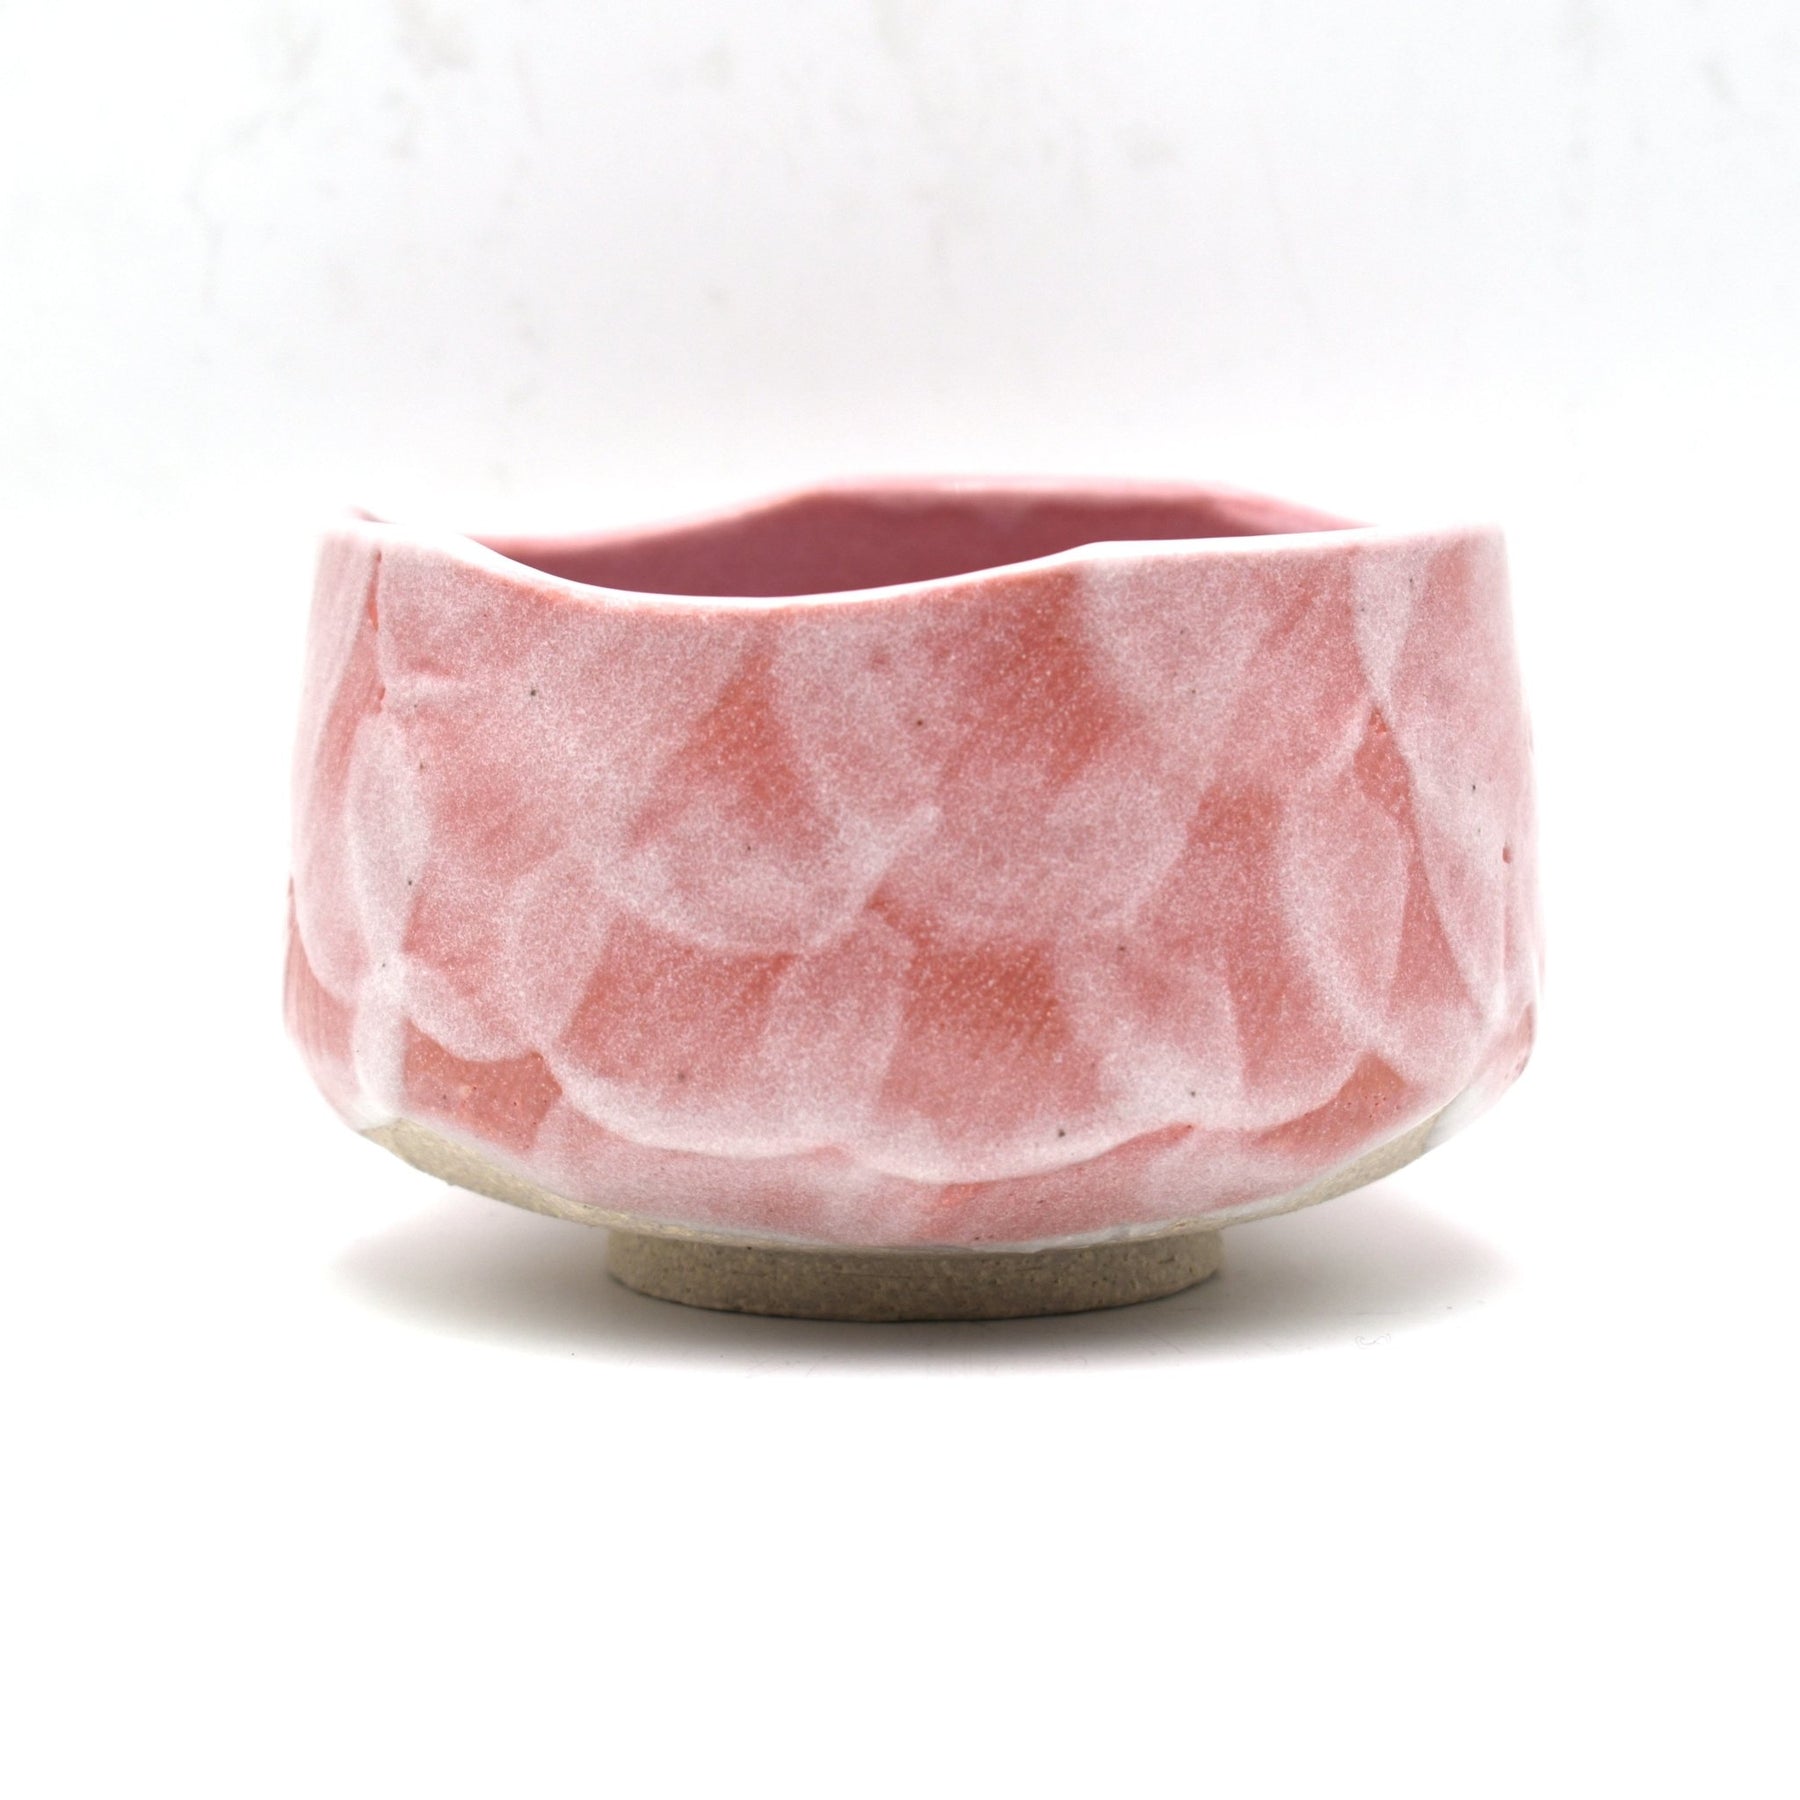 https://shizencha.com/cdn/shop/products/pink-shino-matcha-tea-bowl-354465_1800x1800.jpg?v=1577511409